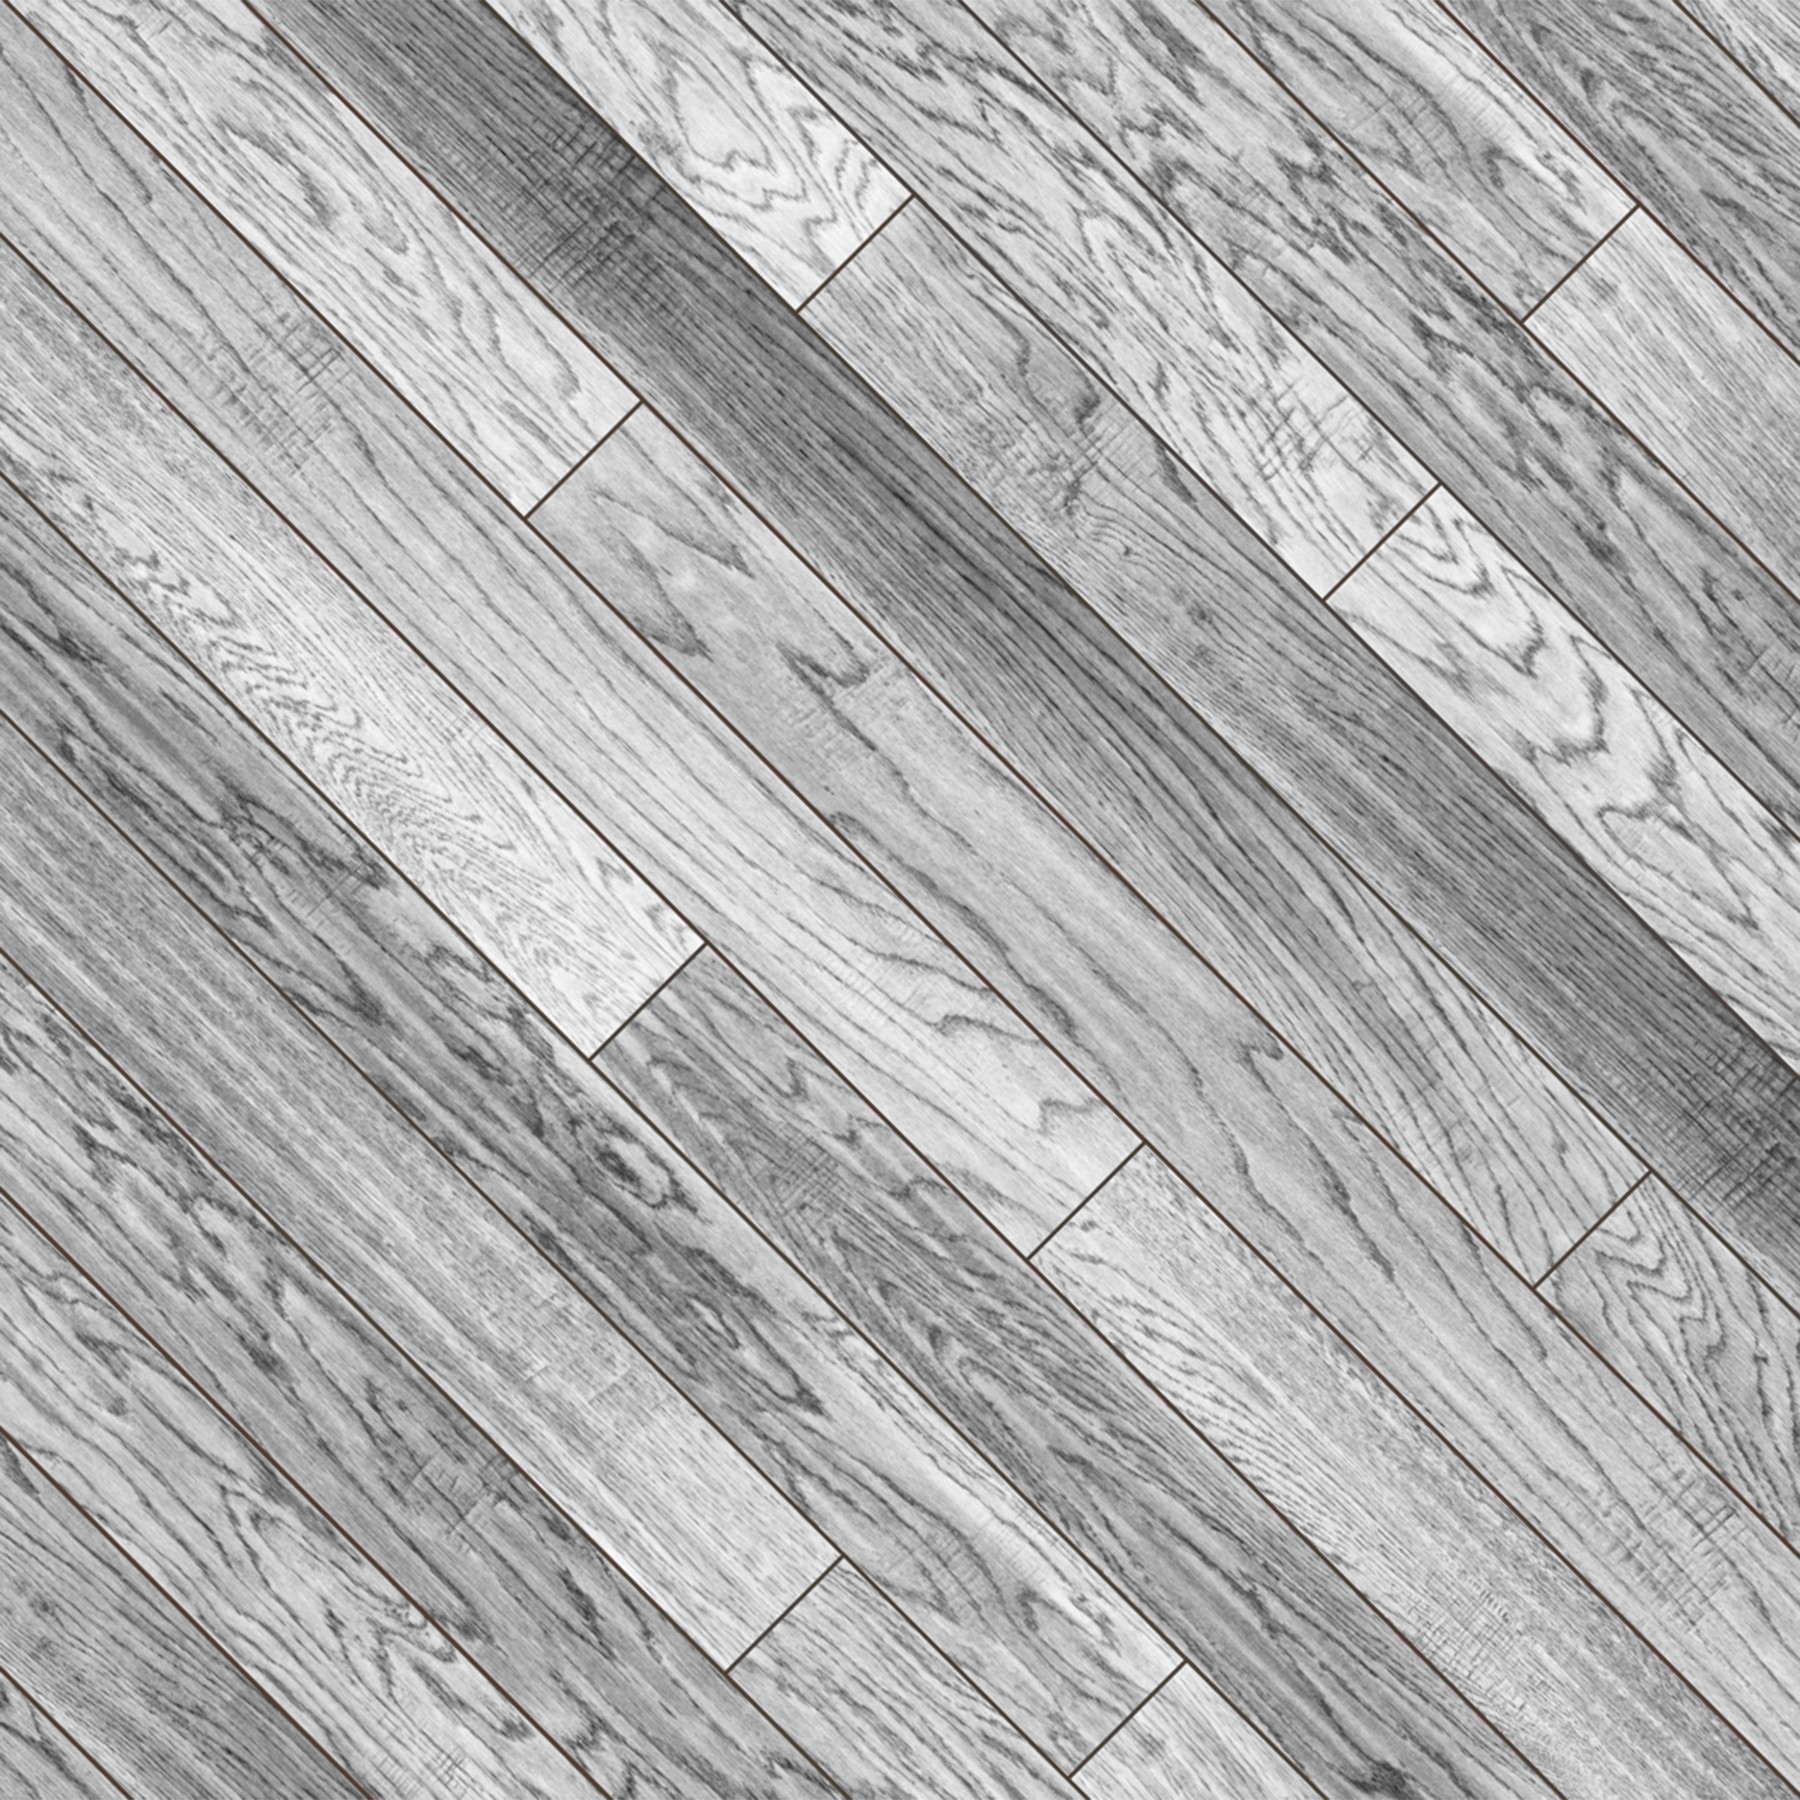 Weathered Teak Slanted with Lines - AquaTread Marine Flooring